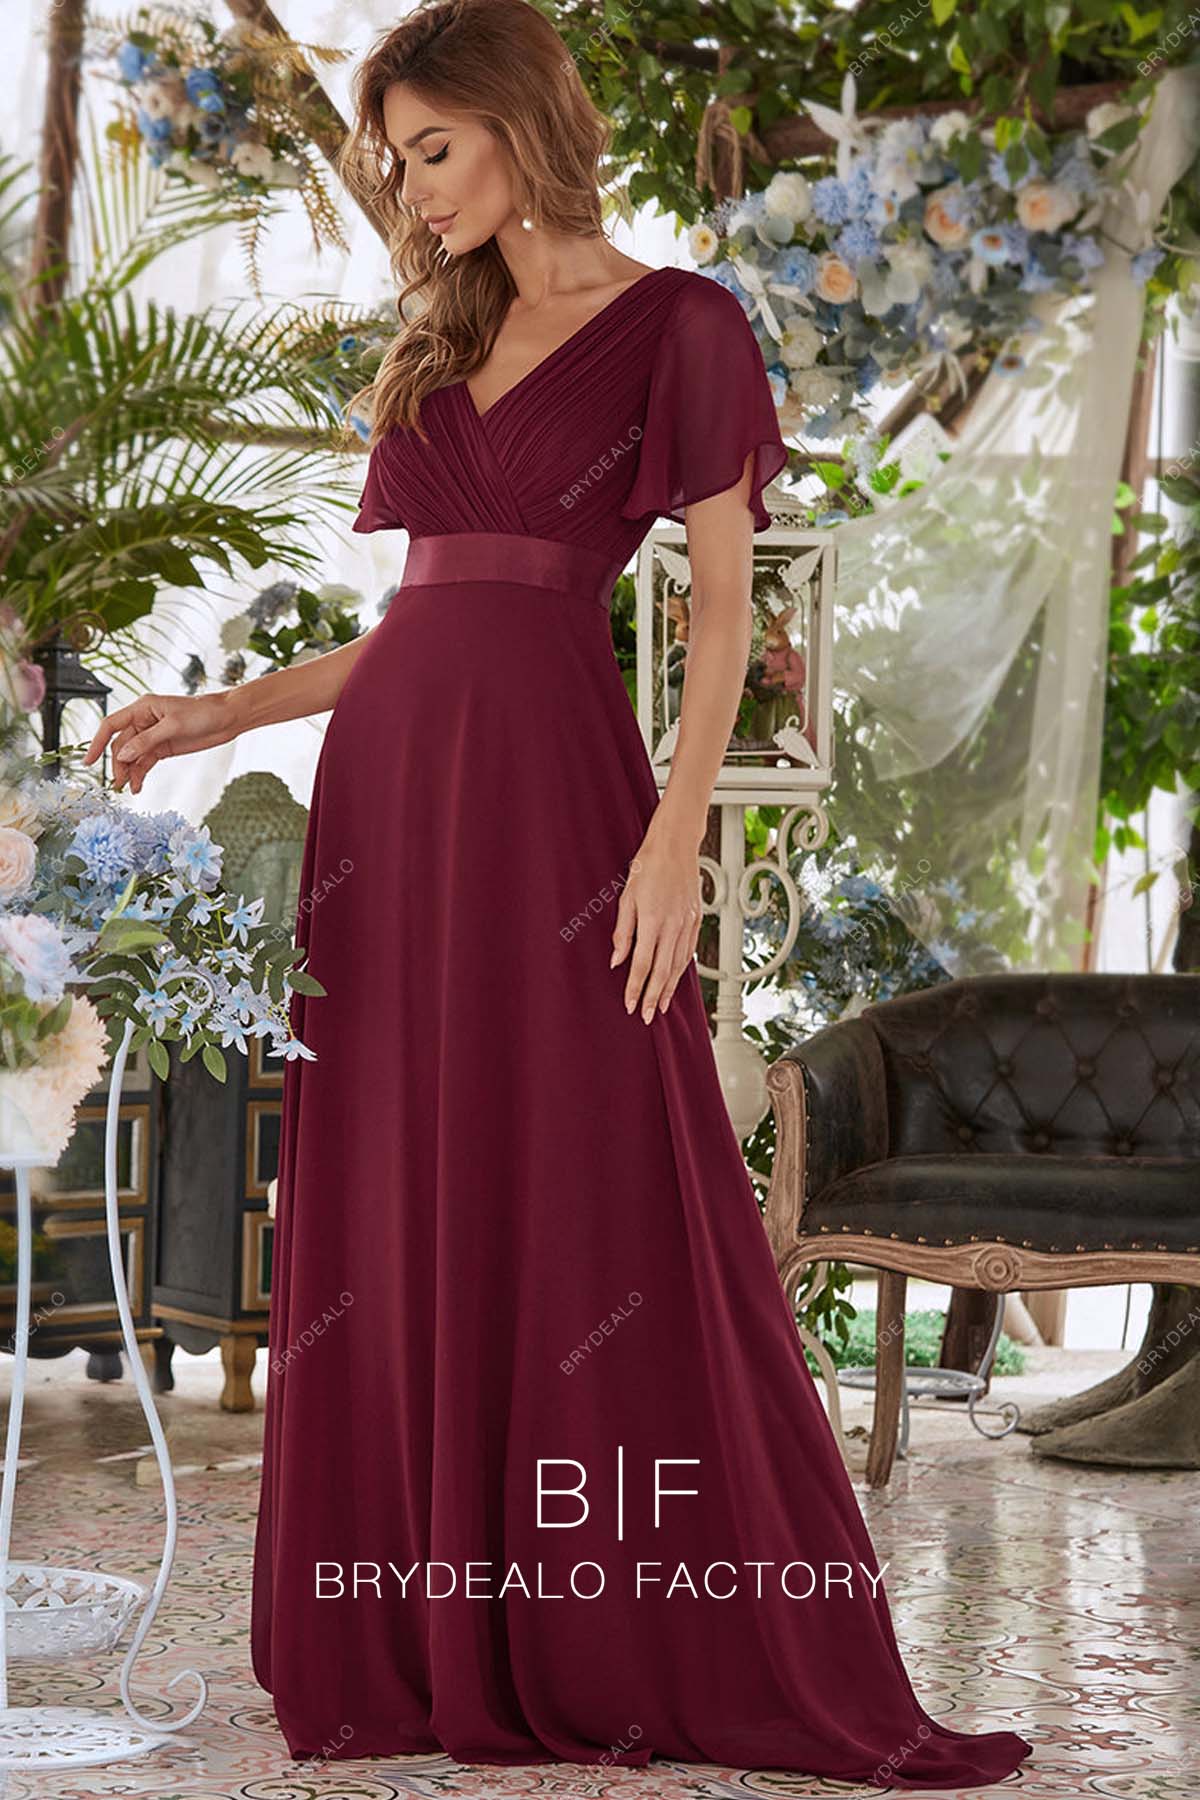 batwing sleeves burgundy bridesmaid dress